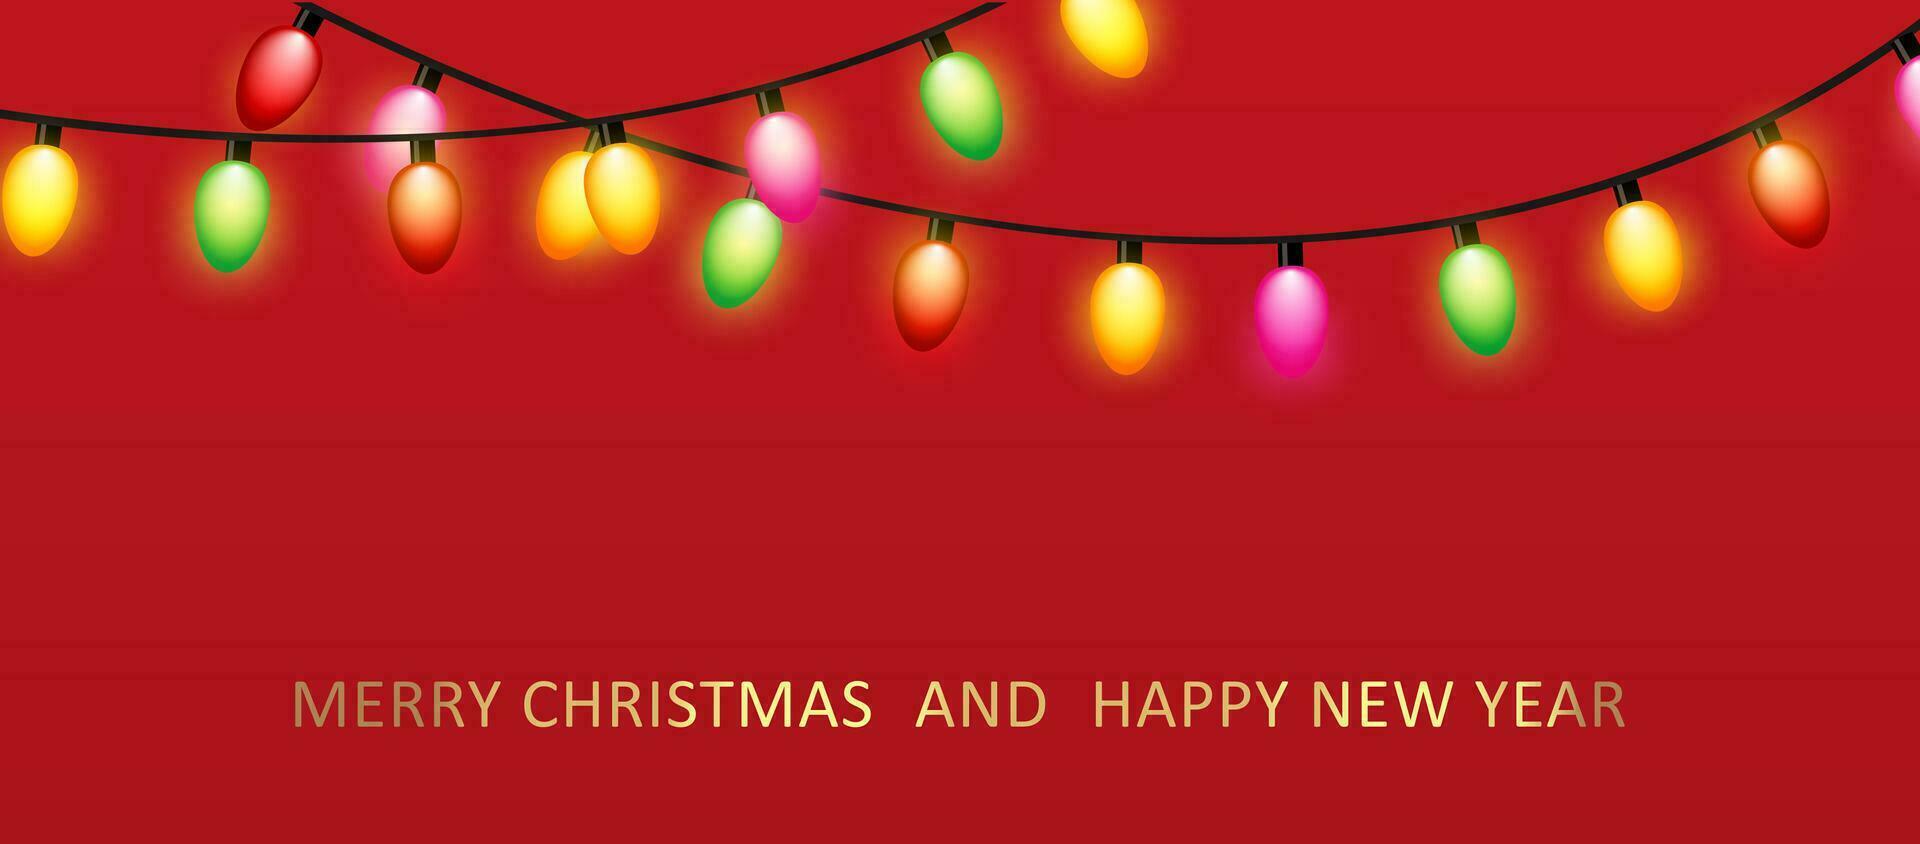 Kerstmis rood achtergrond met decoratie ronde ring van glas licht guirlande. vrolijk Kerstmis groet kaart. gelukkig nieuw jaar. feestelijk helder ontwerp. Kerstmis vakantie poster. vector